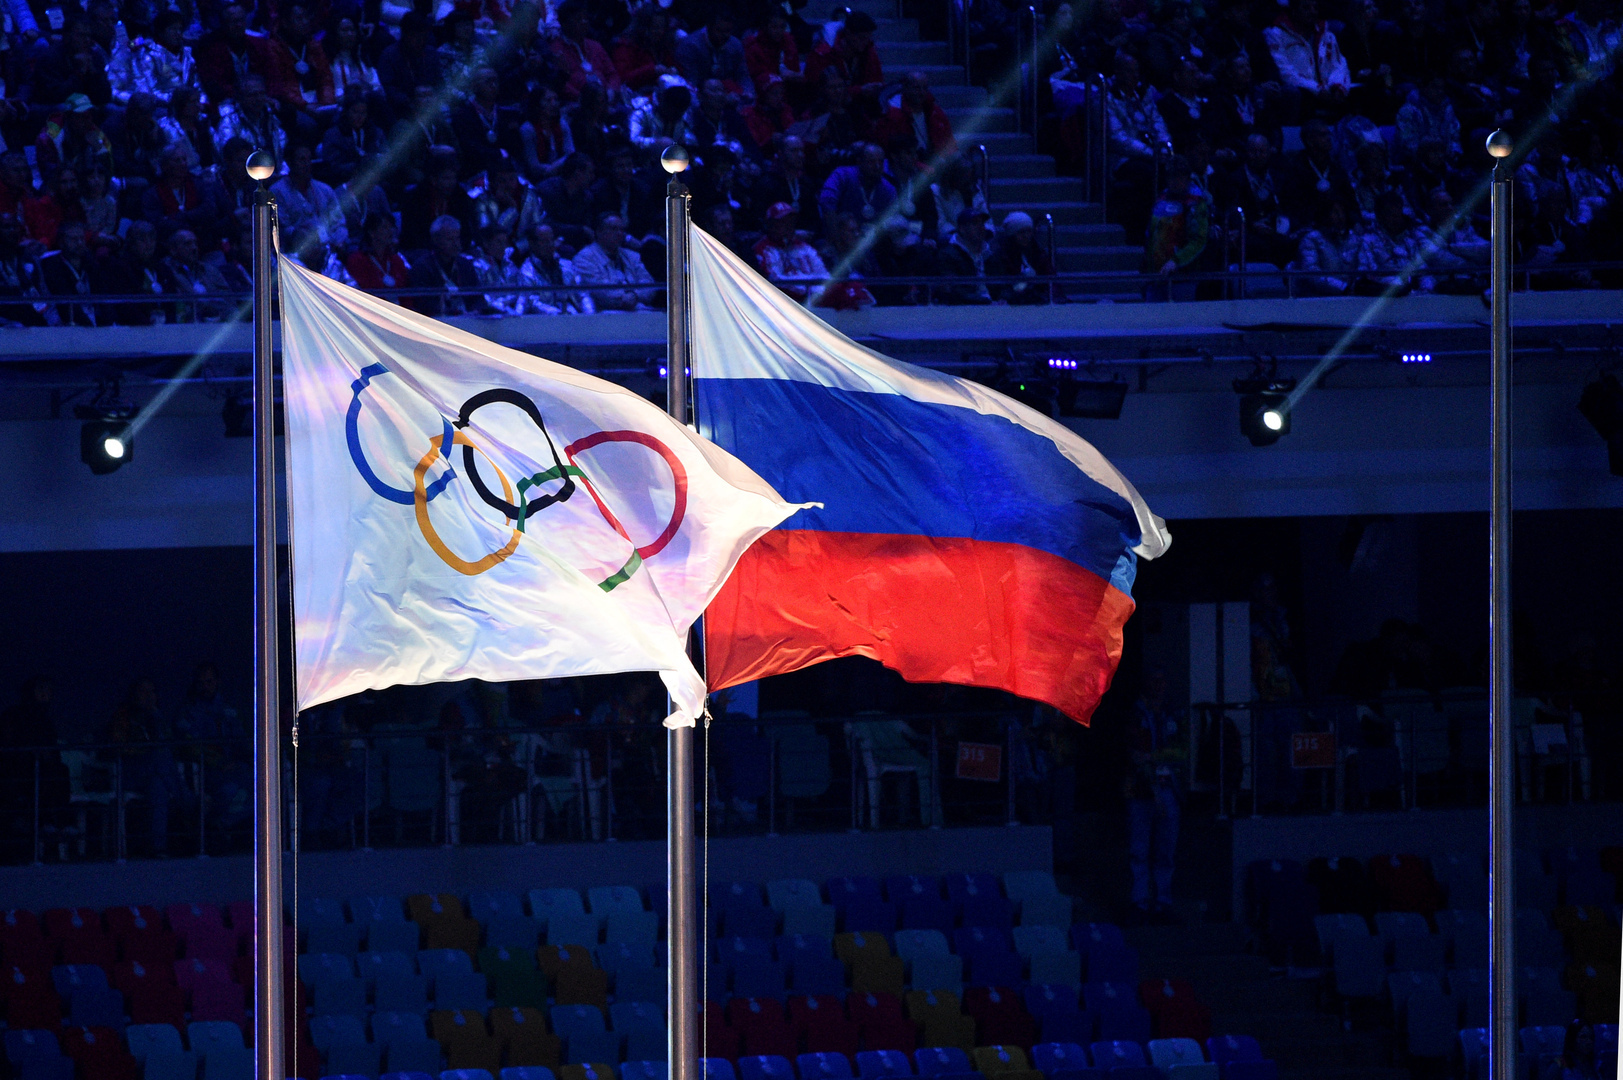 اللجنة الأولمبية الدولية تؤكد استمرار فرض العقوبات على روسيا